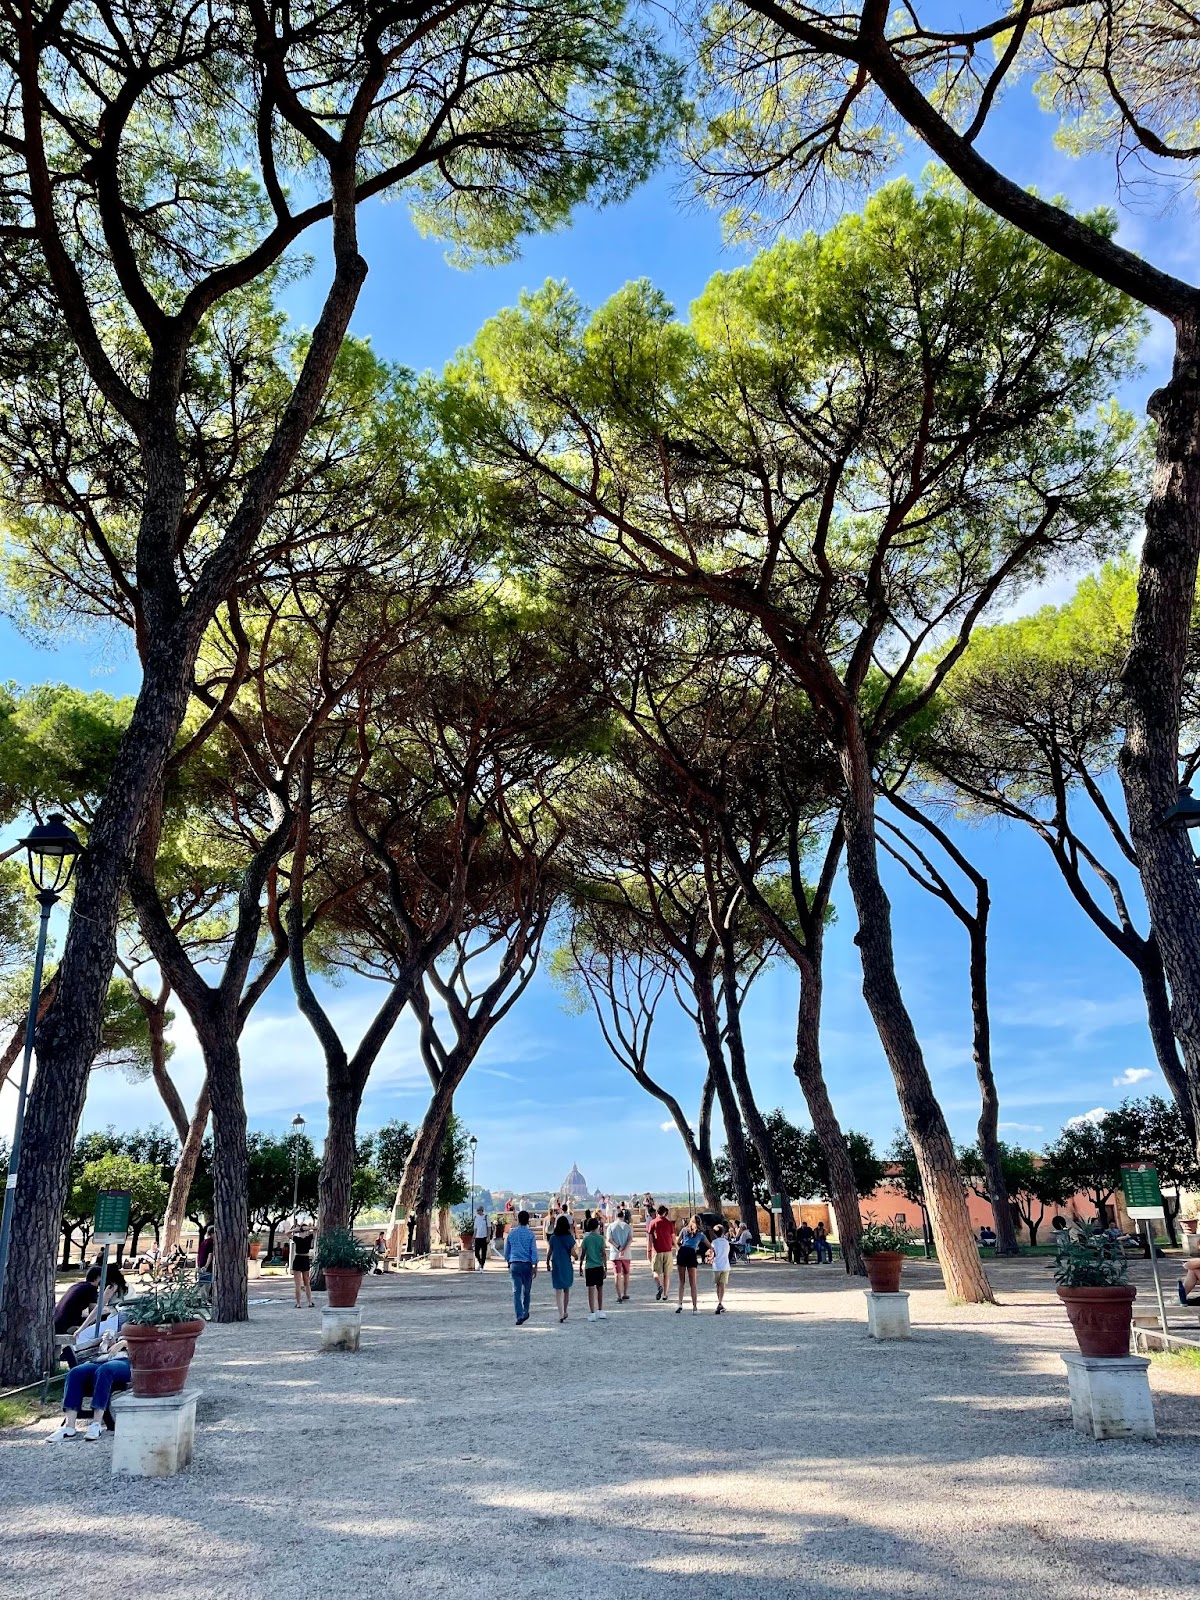 Instagrammable spots in Rome